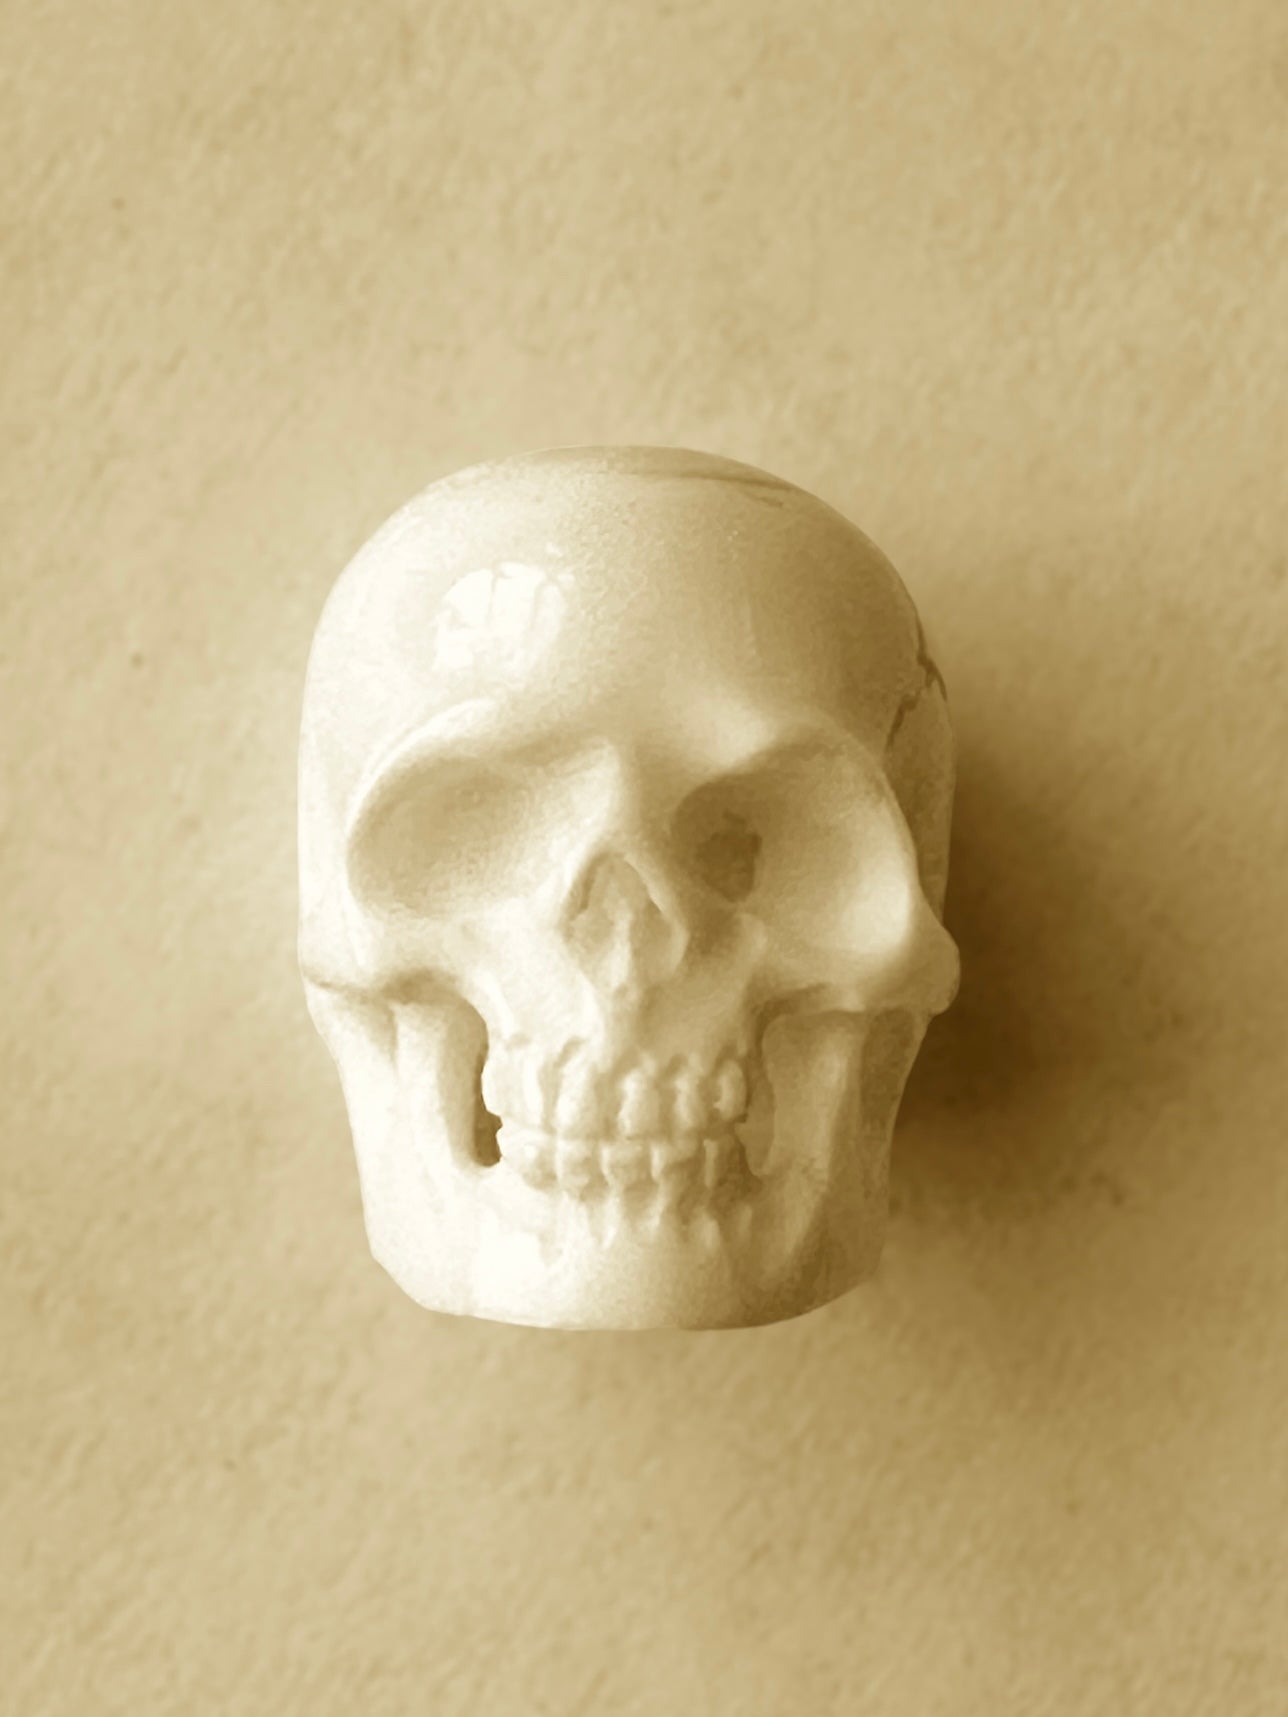 Hand Carved Bison Bone and Horn Skulls - Choose Necklace, Bead or Decor